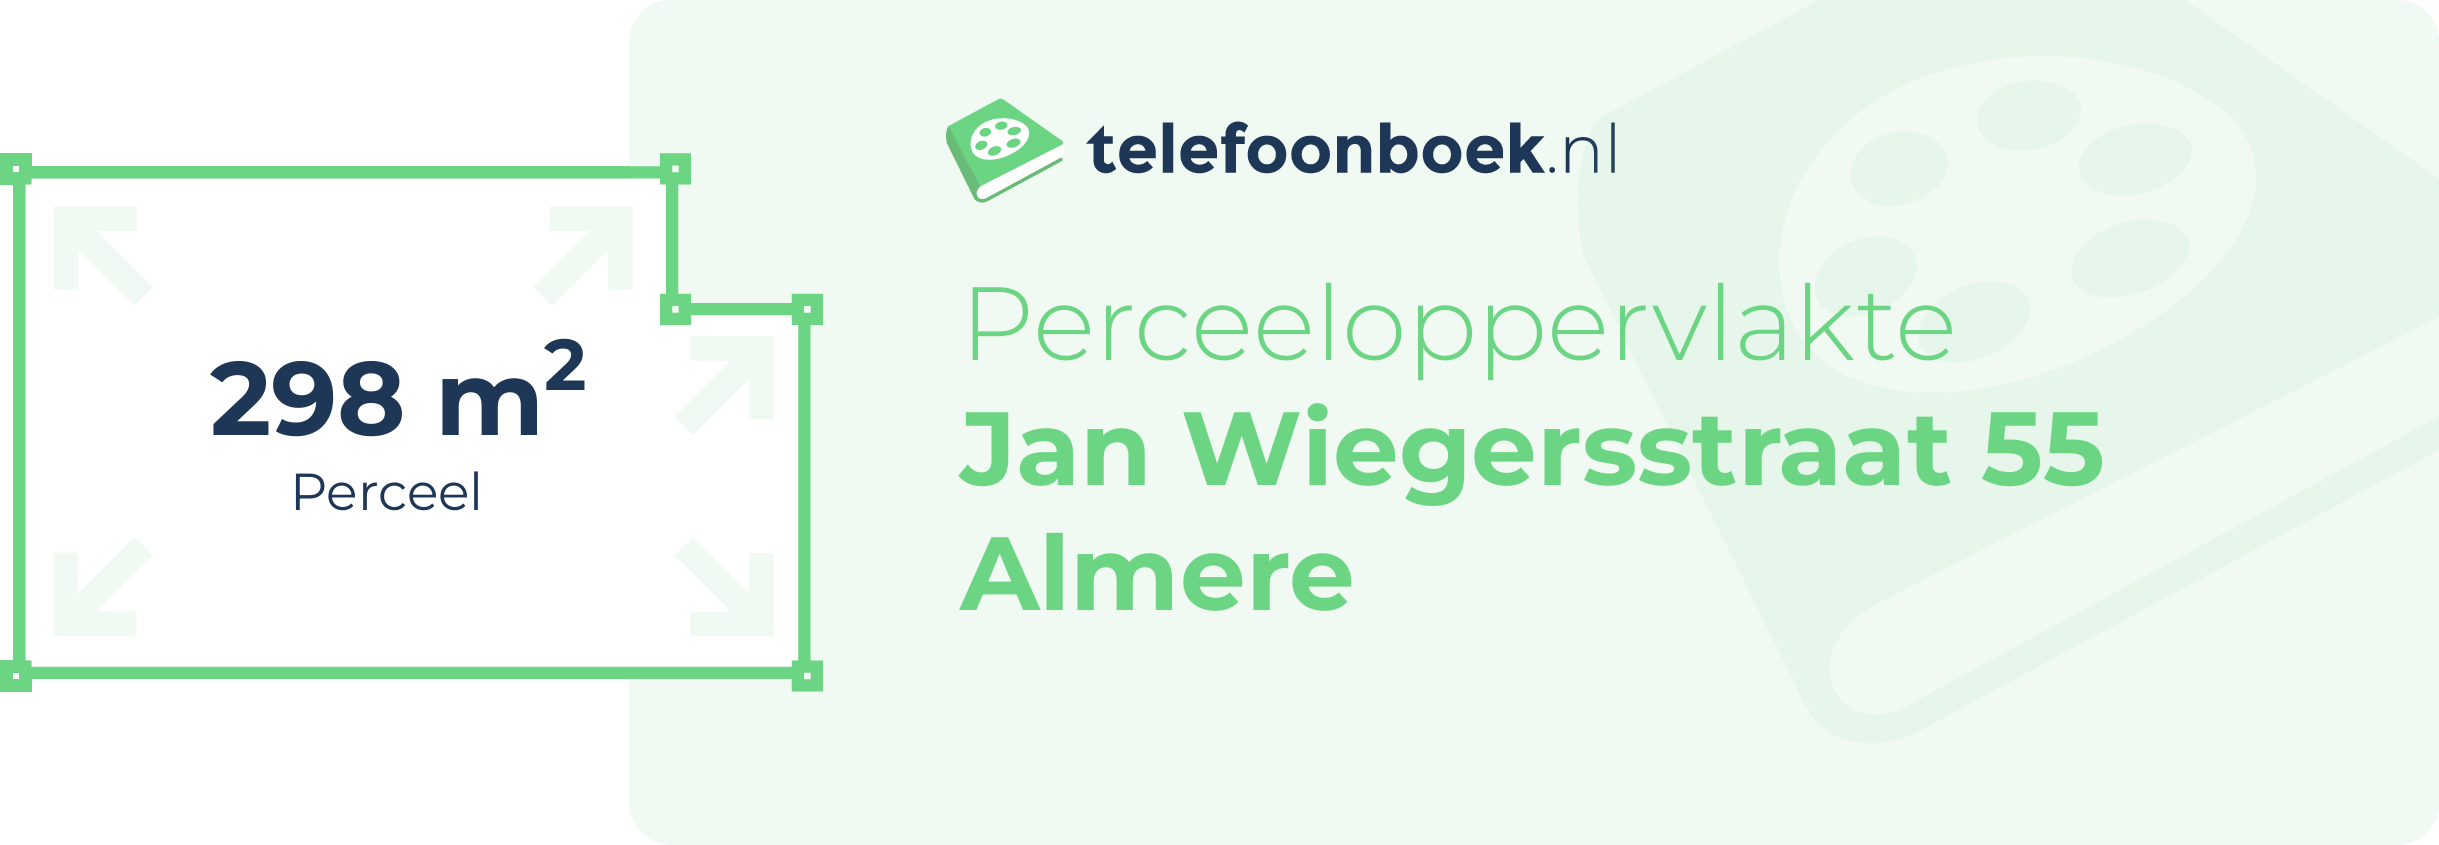 Perceeloppervlakte Jan Wiegersstraat 55 Almere